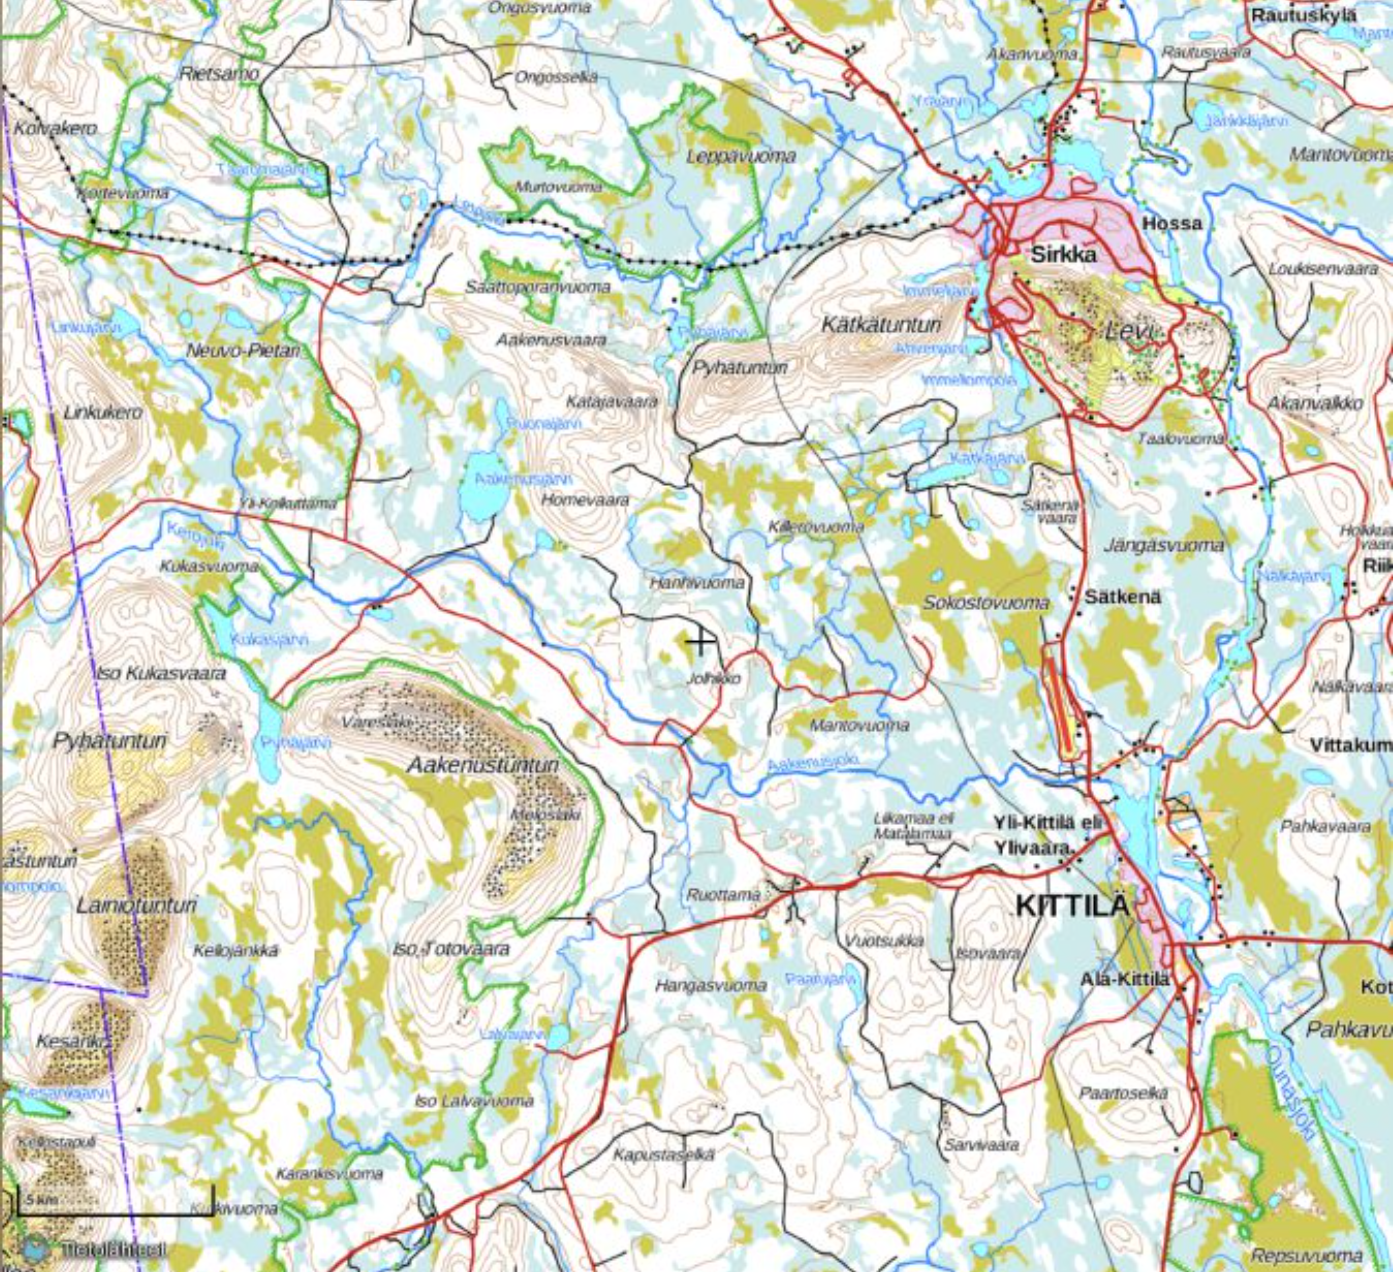 Map of Kitillä area